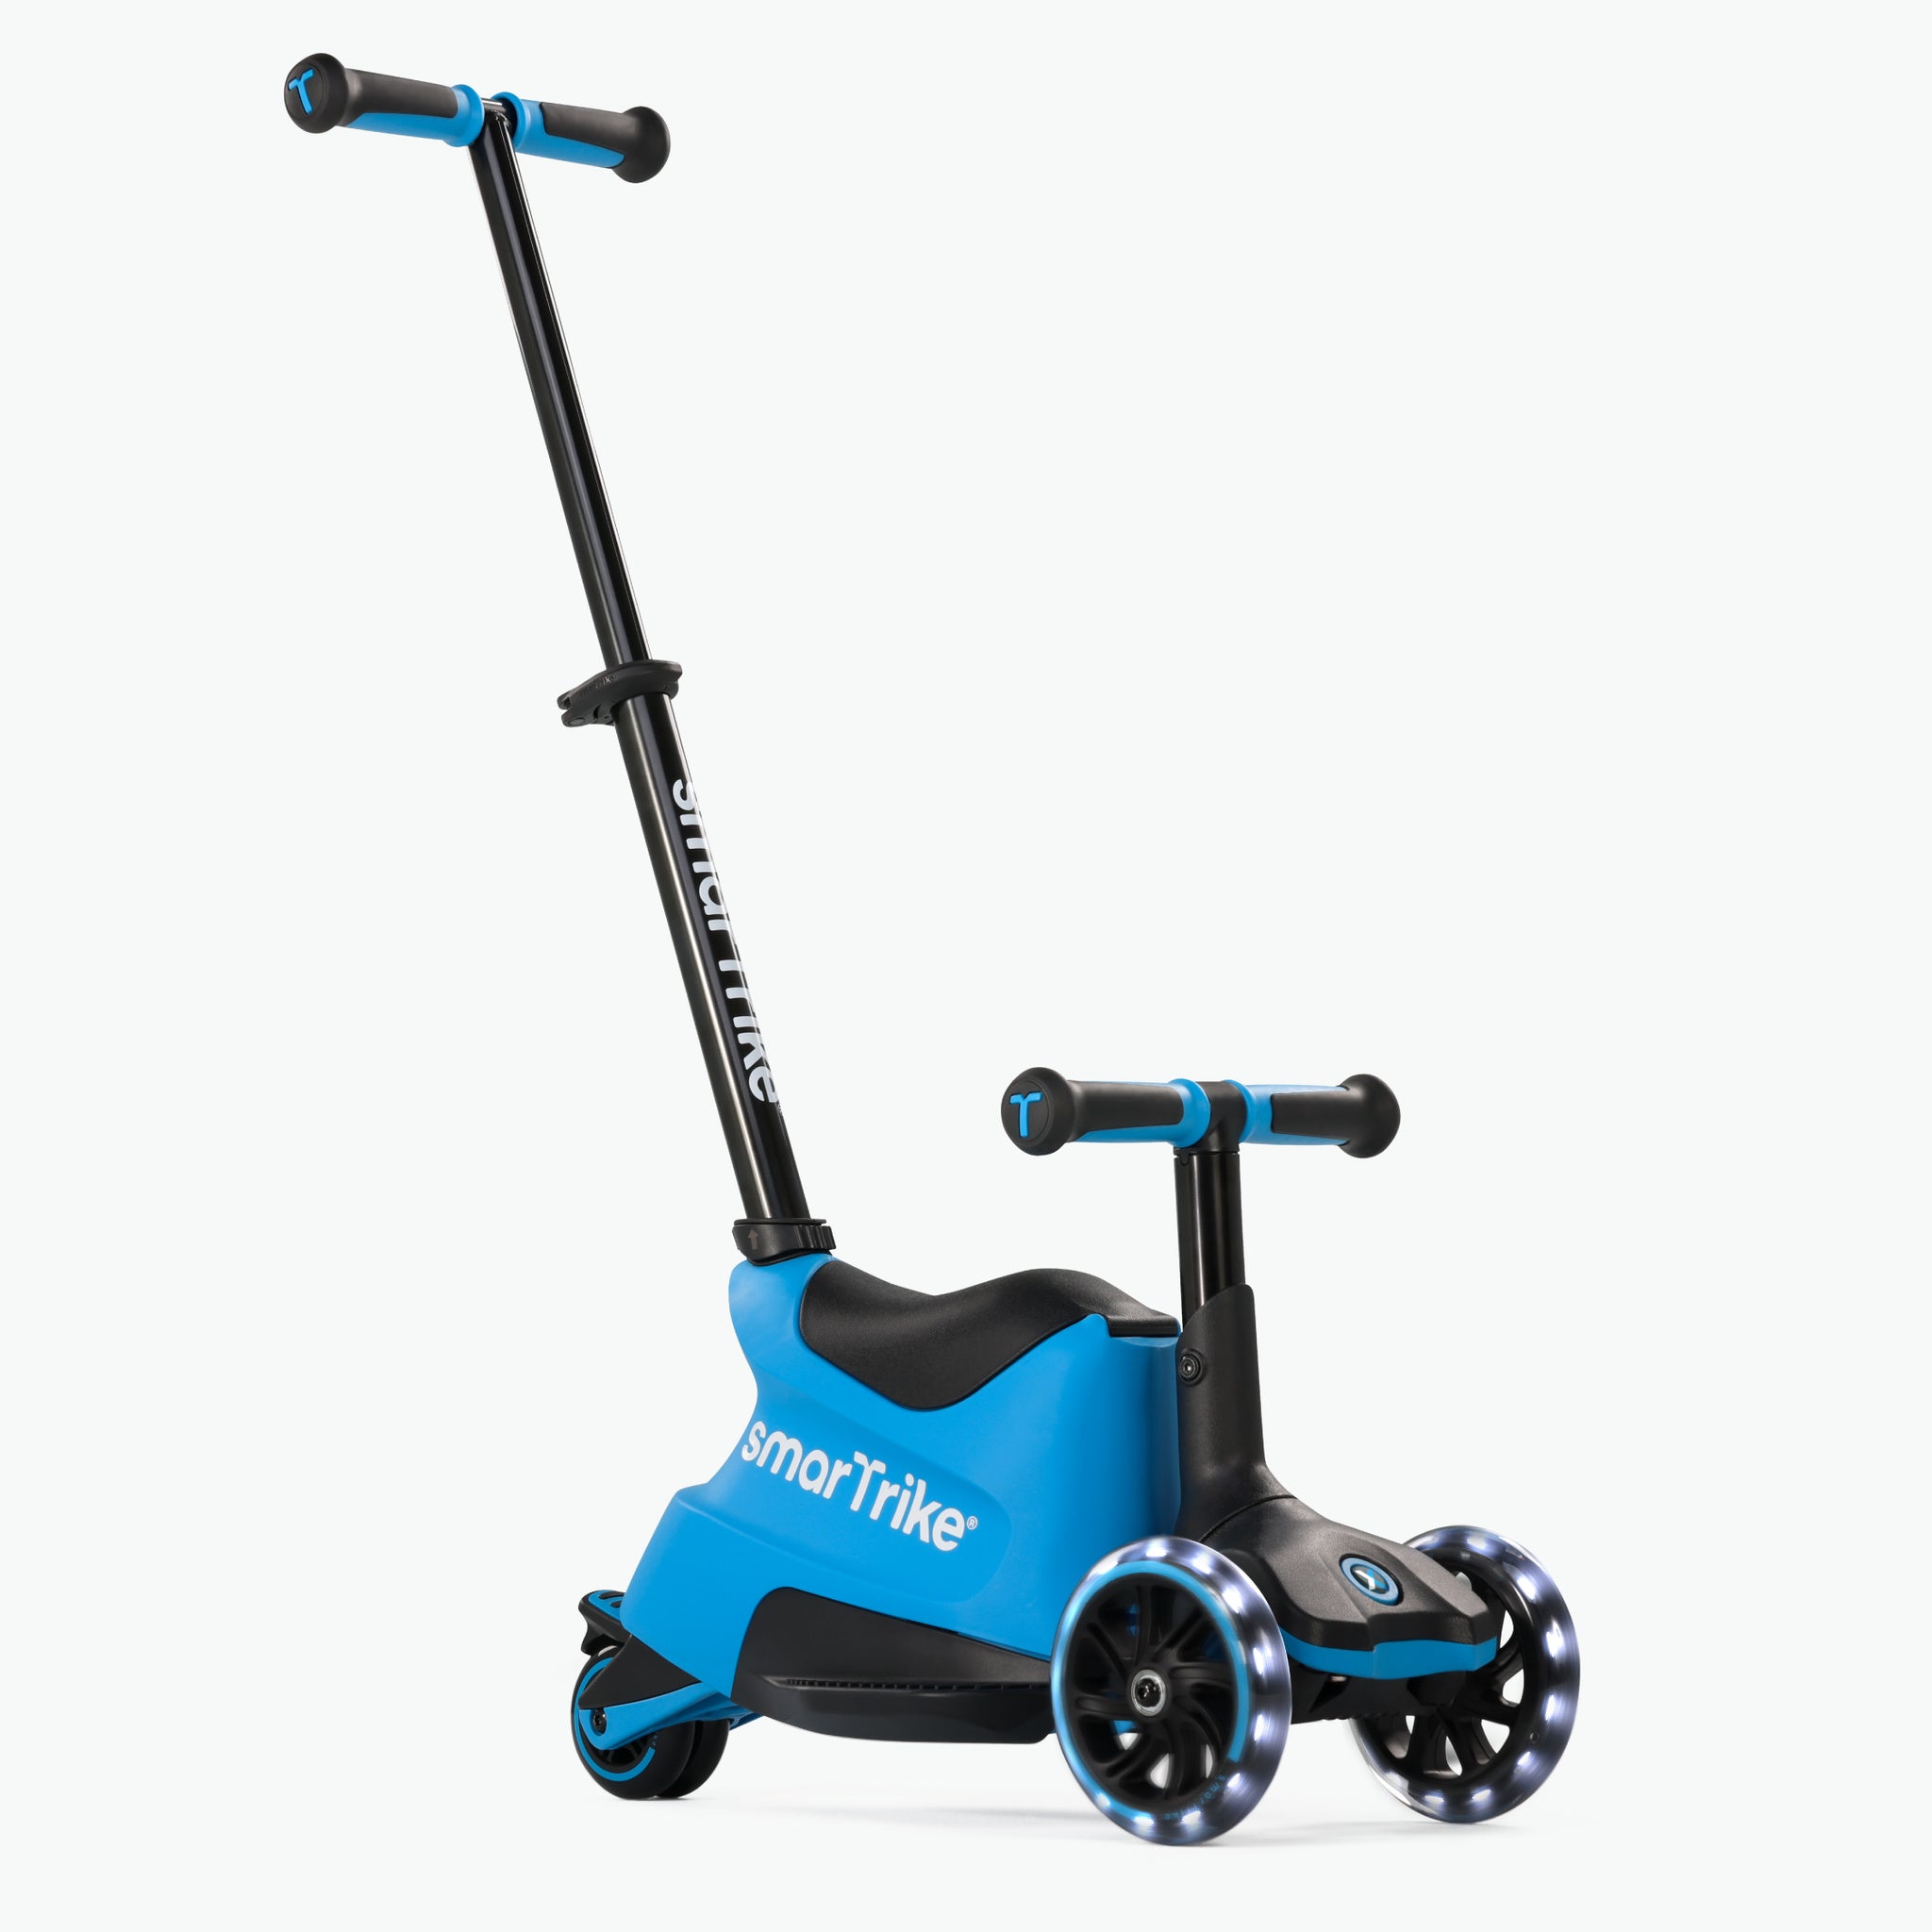 Smarttrike - 4in1 Scooter - Xtend Ride -on - Blau